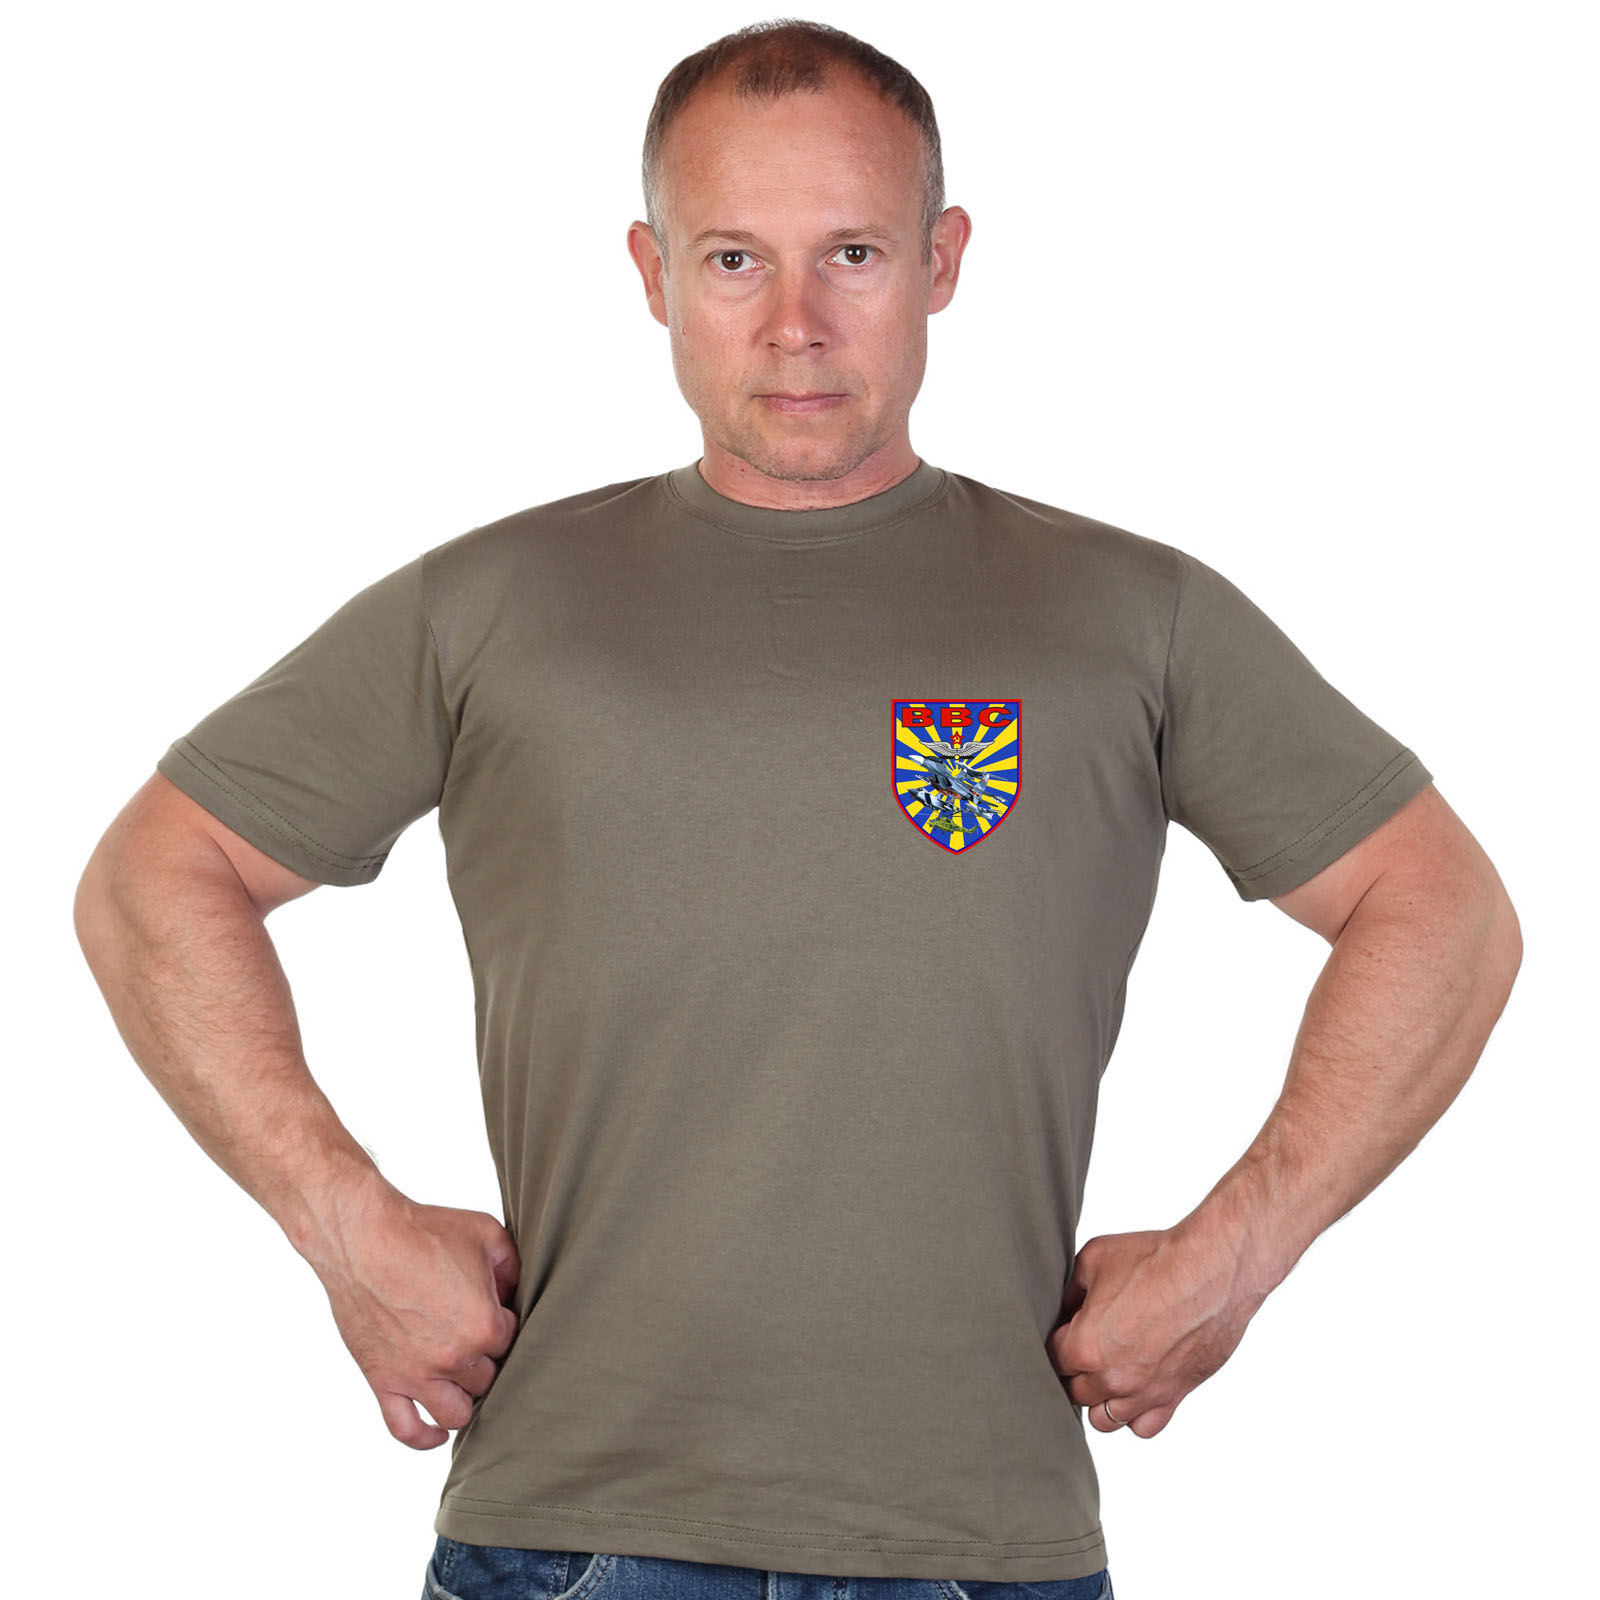 Оливковая футболка с термотрансфером "ВВС" 